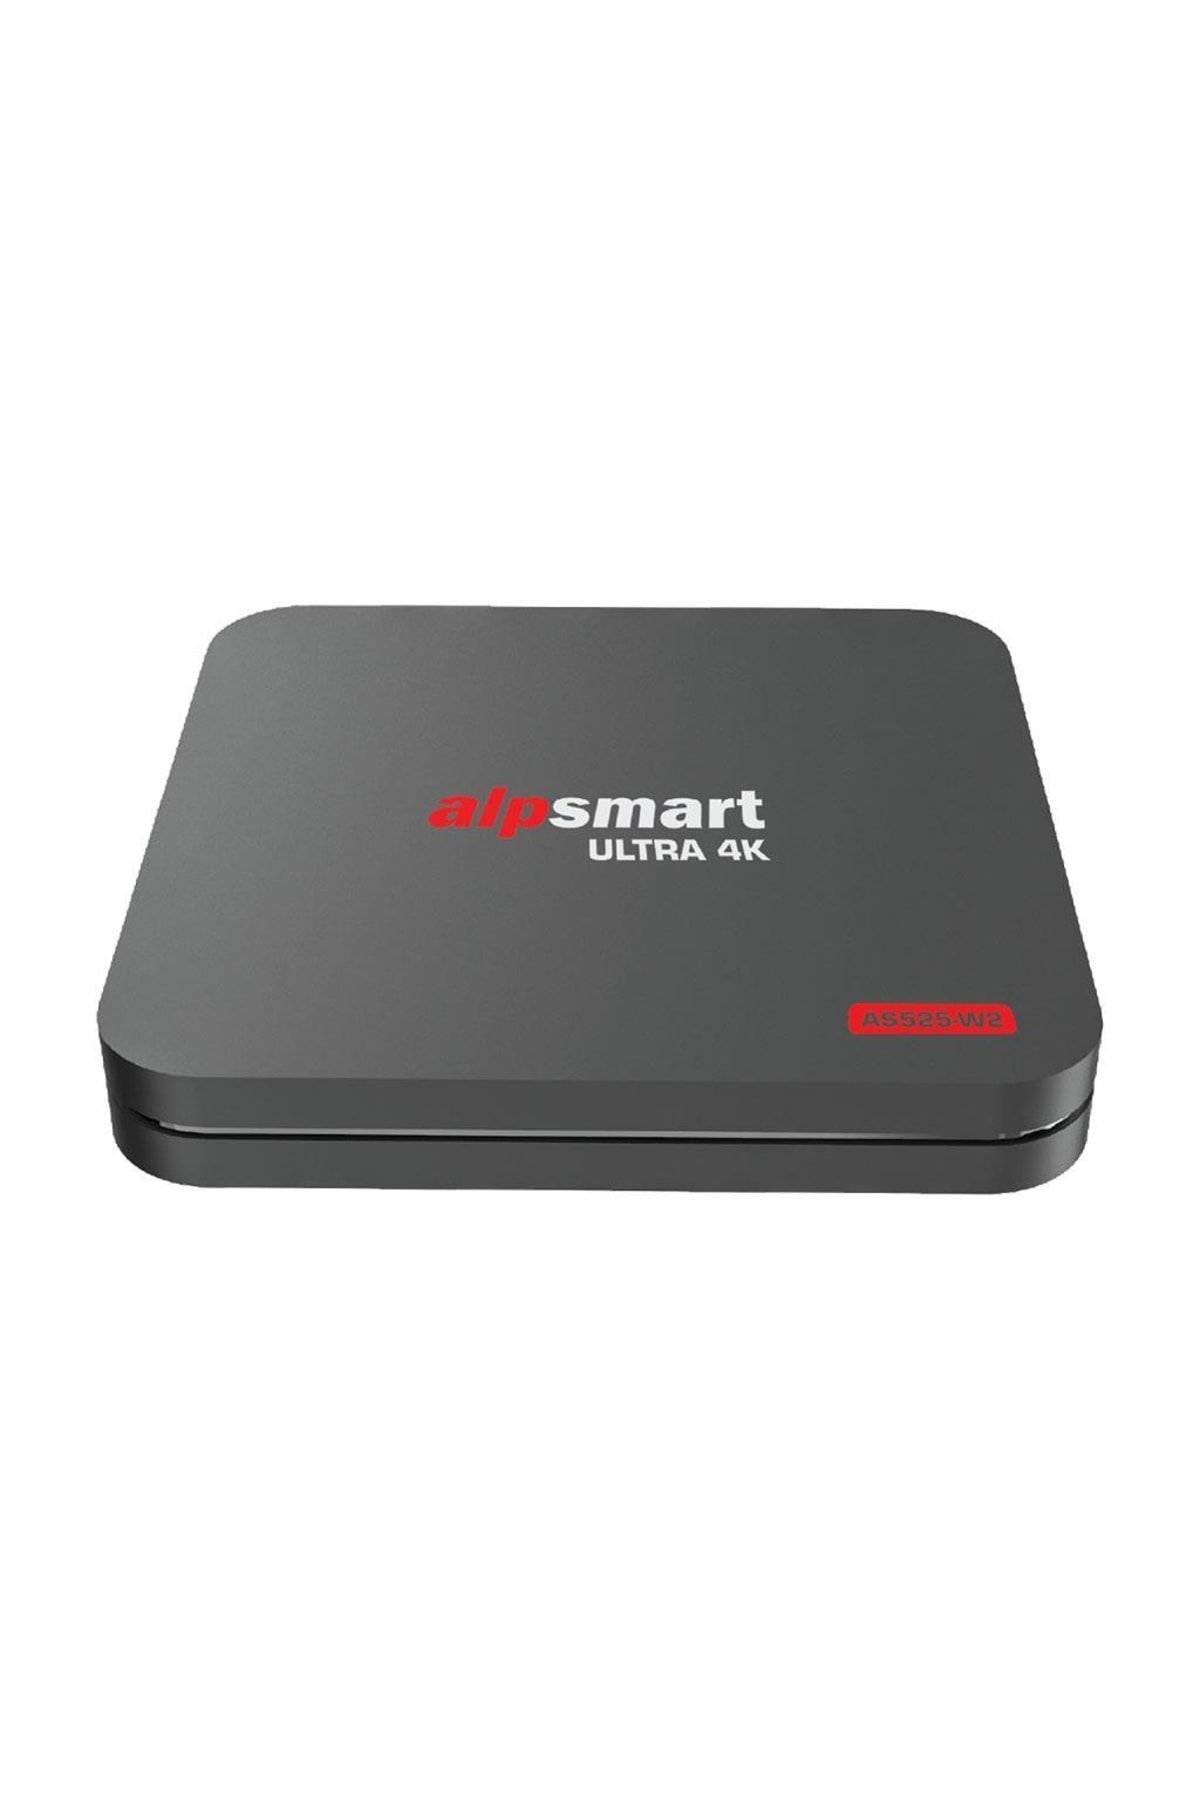 ALPSMART As-525 W2 Android Tv Box | 2gb Ram 16gb Hafıza